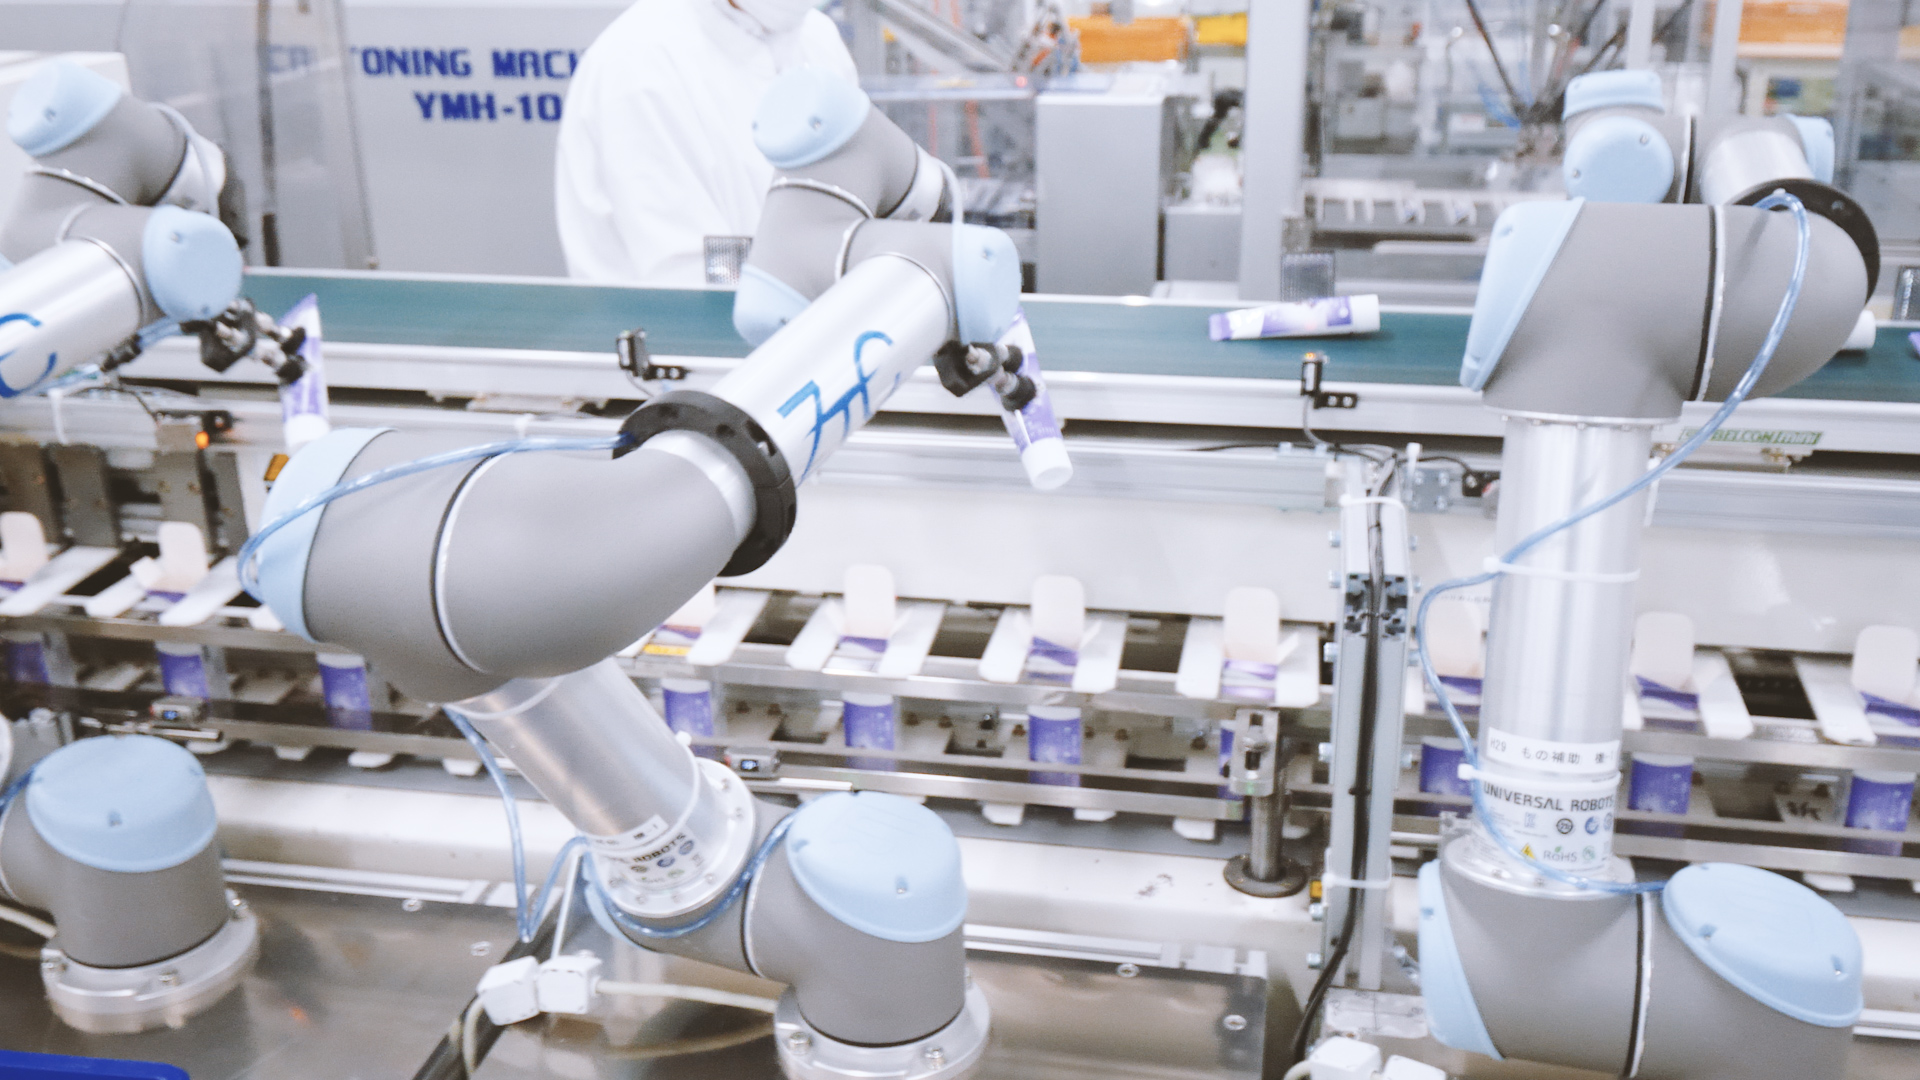 优傲机器人解决Nippon Zettoc劳动力短缺问题,UR5协作机器人助力包装产能提升30％